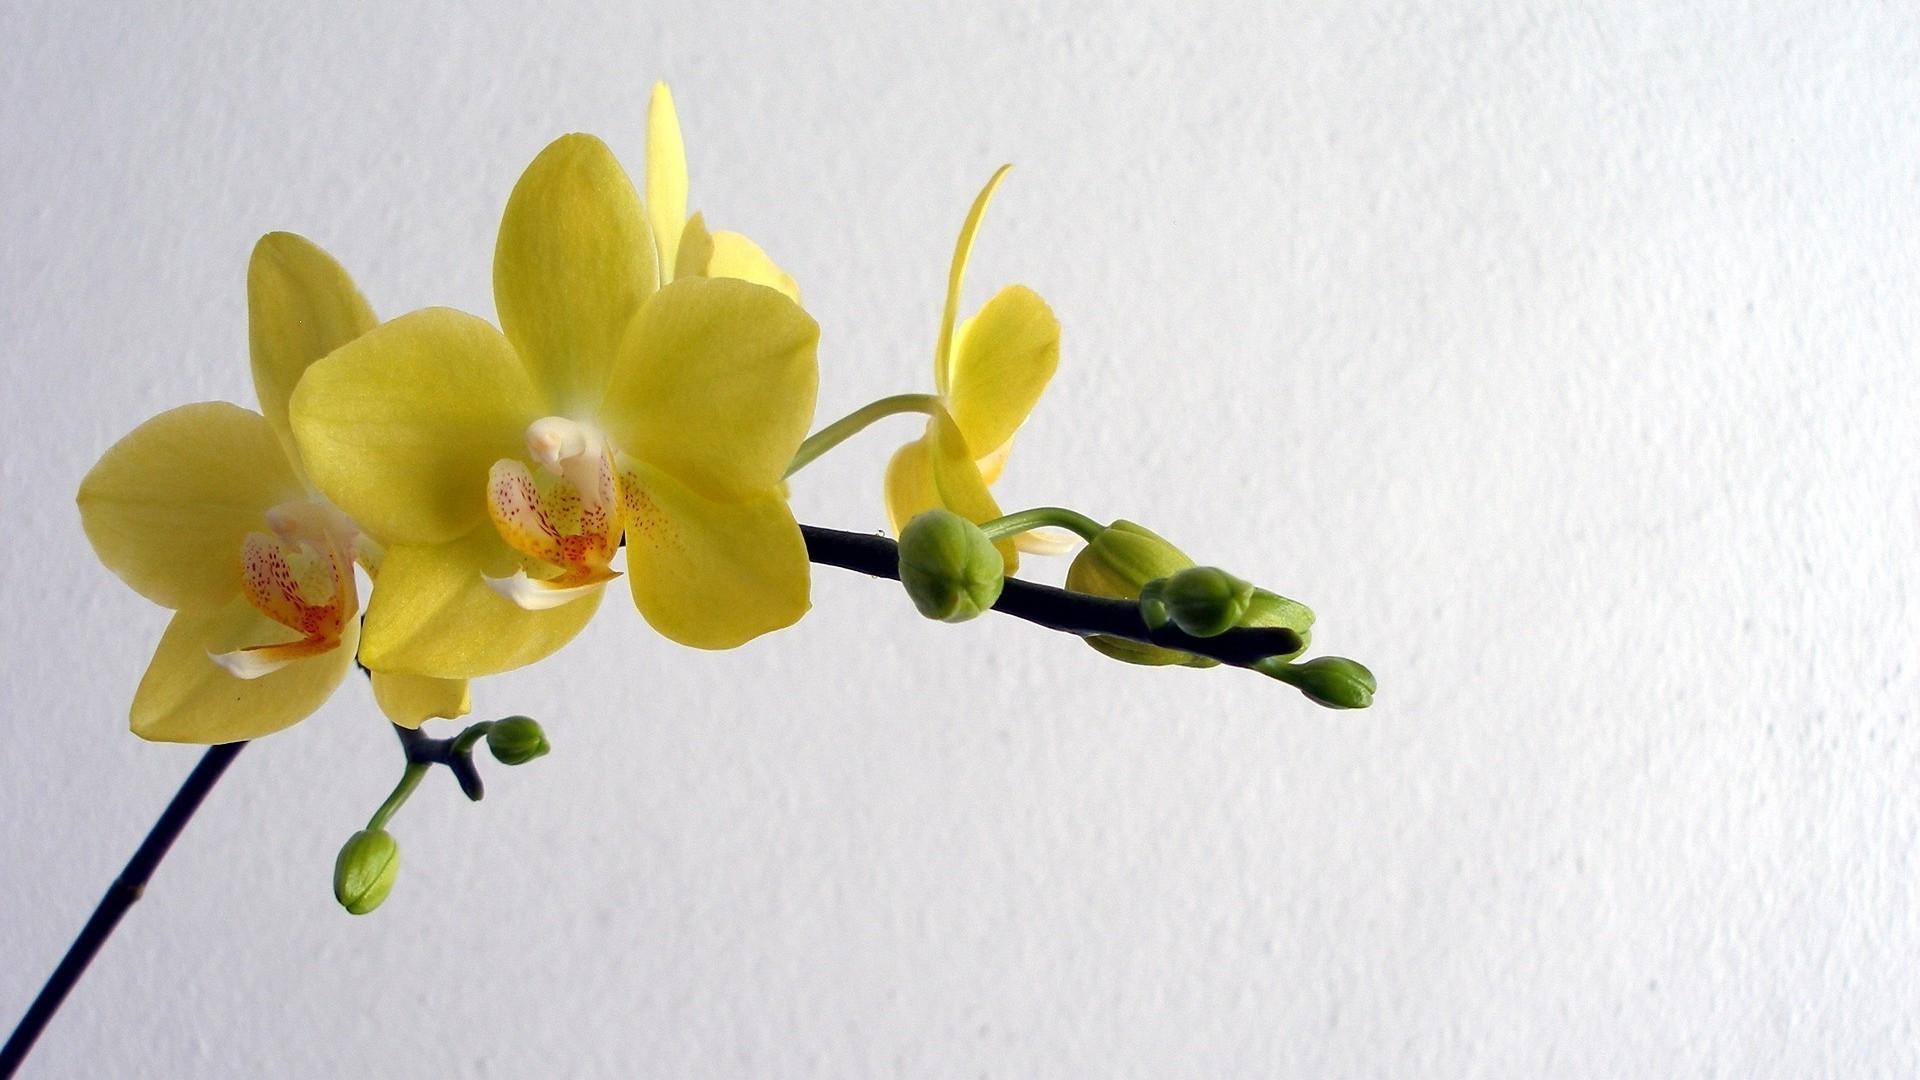 цветы цветок флора природа тропический лист филиал лепесток цветочные цвет блюминг экзотические нежный красивые орхидеи лузга размытость сад украшения яркий